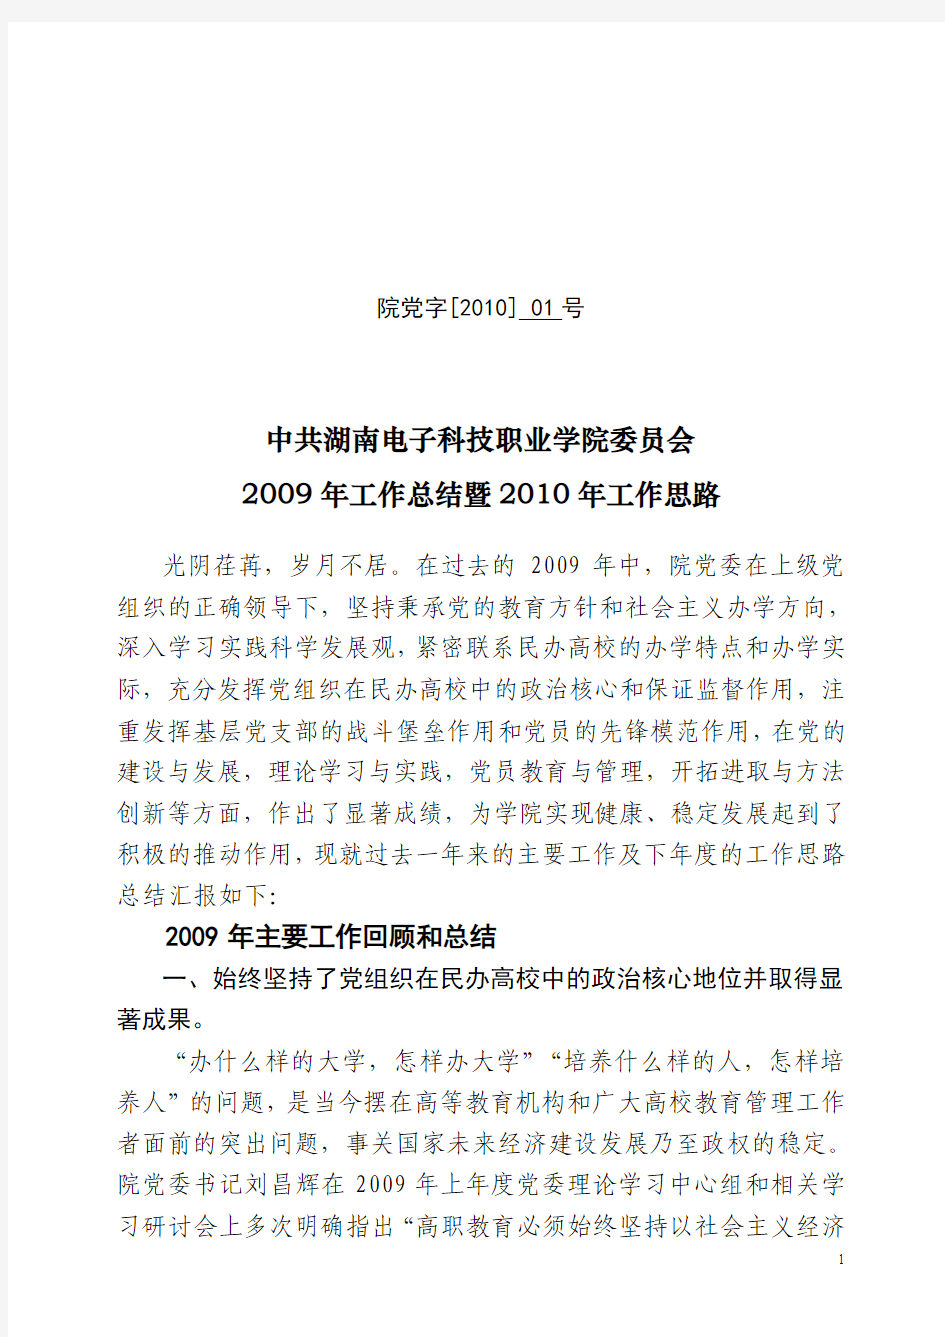 中共湖南电子科技职业学院委员会2009年工作总结暨2010年工作思路01号